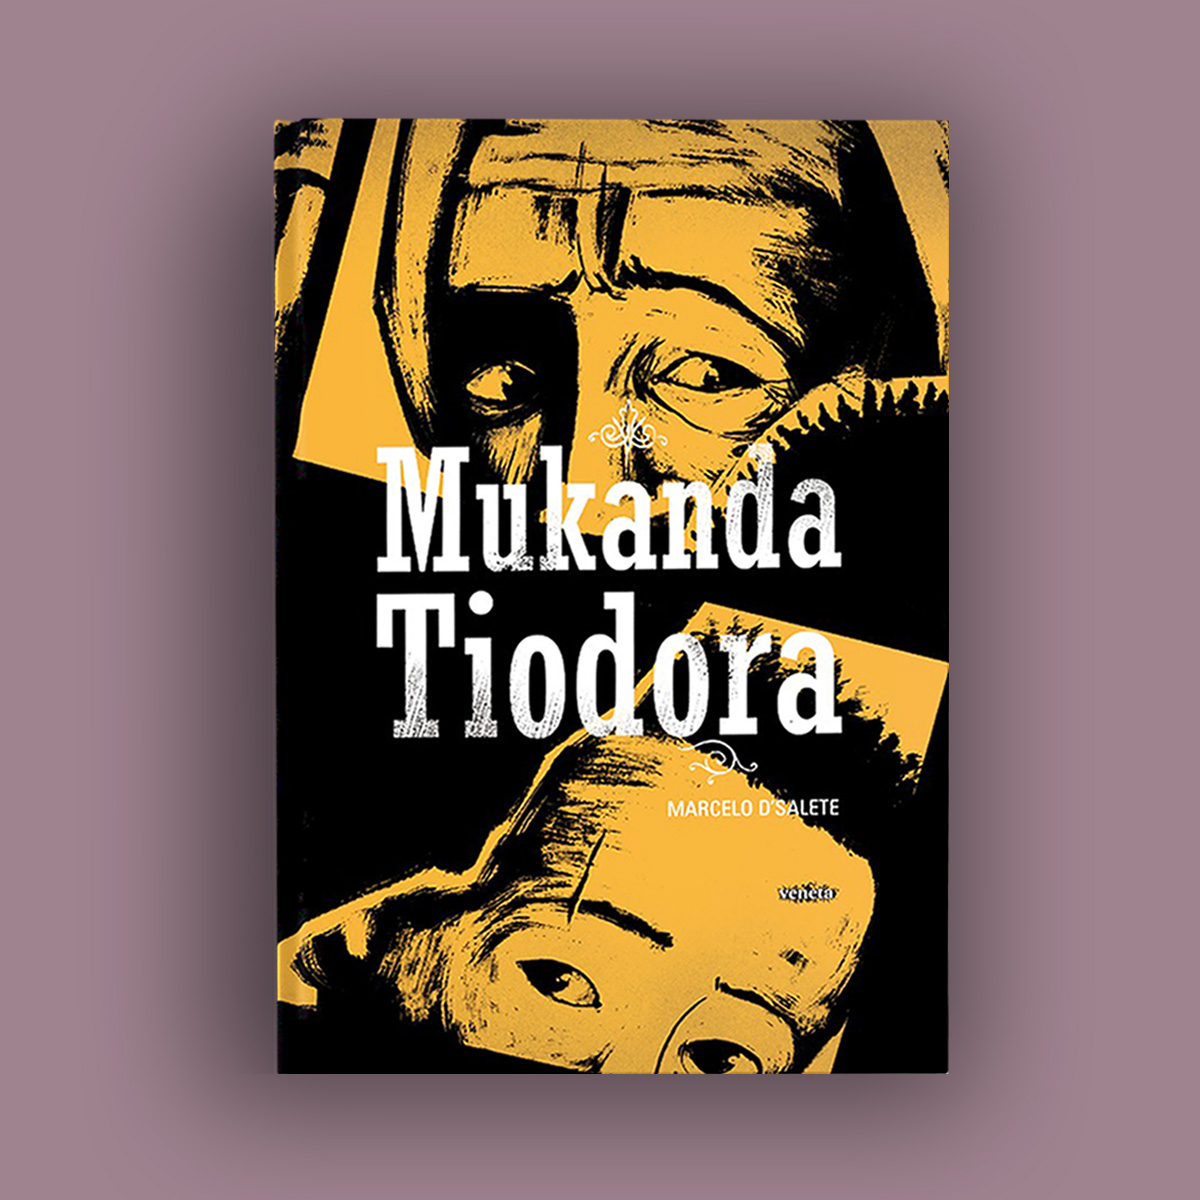 Mukanda Tiodora primeira imagem atualizada